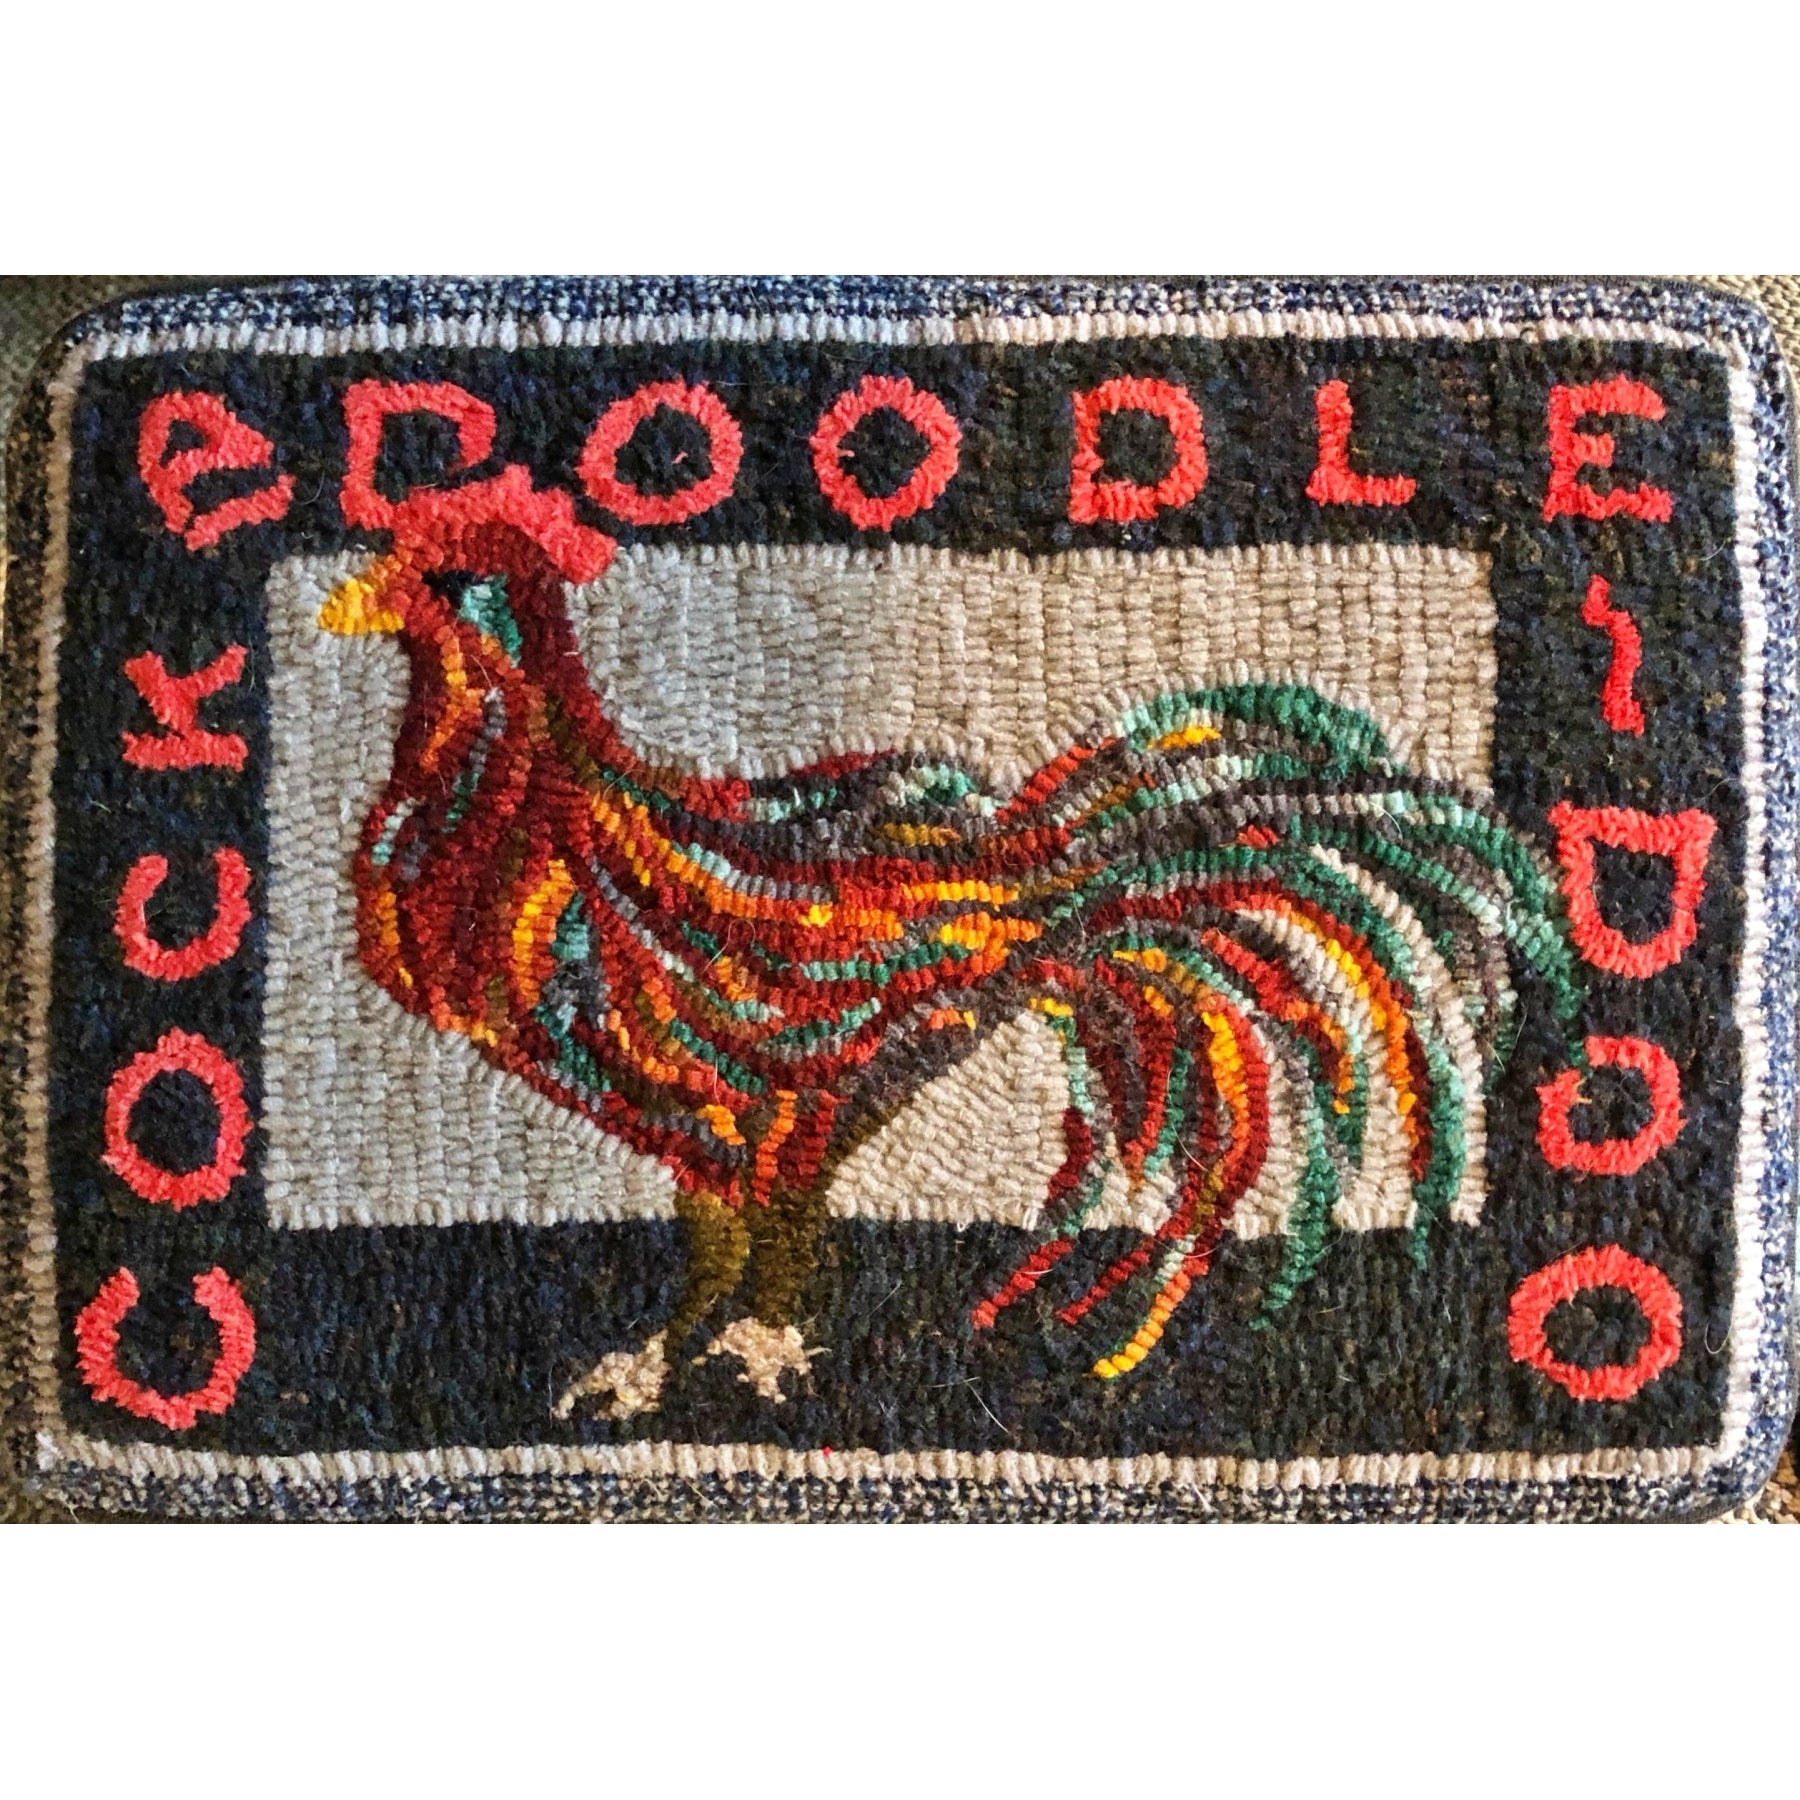 Cock - Country Footstool Pattern, rug hooked by Susan Saari